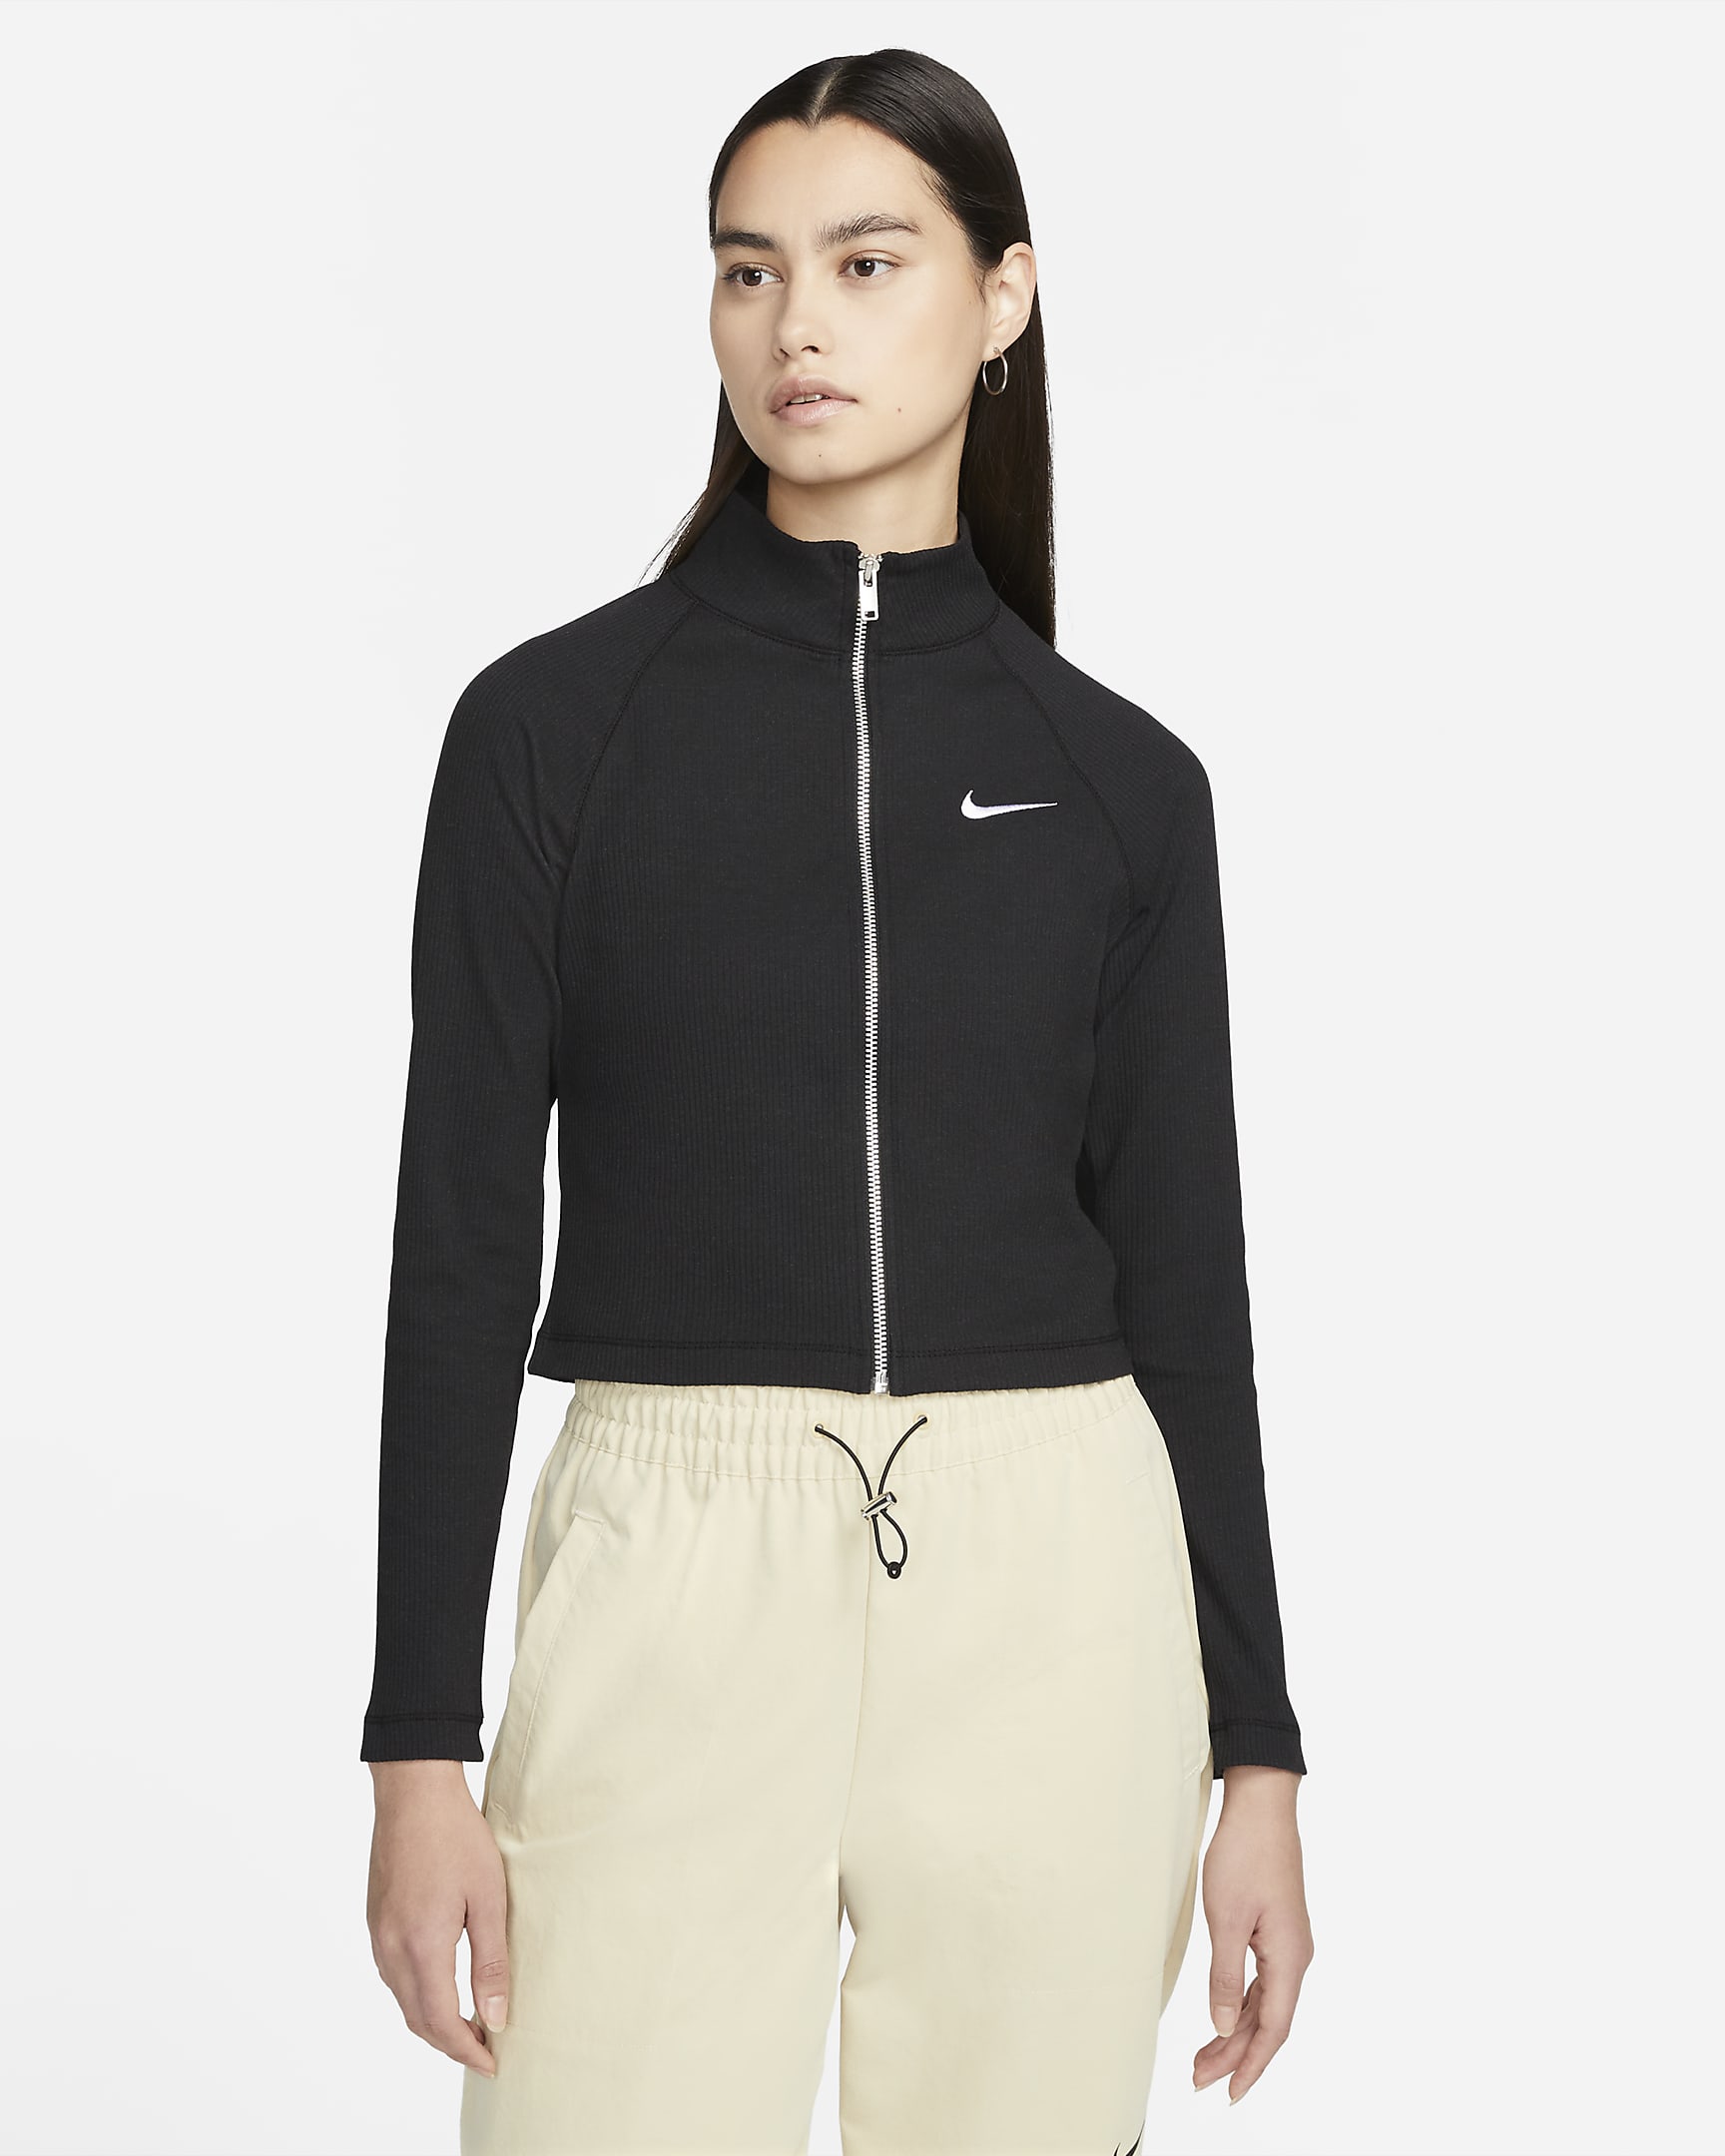 Nike Sportswear Women's Jacket. Nike FI